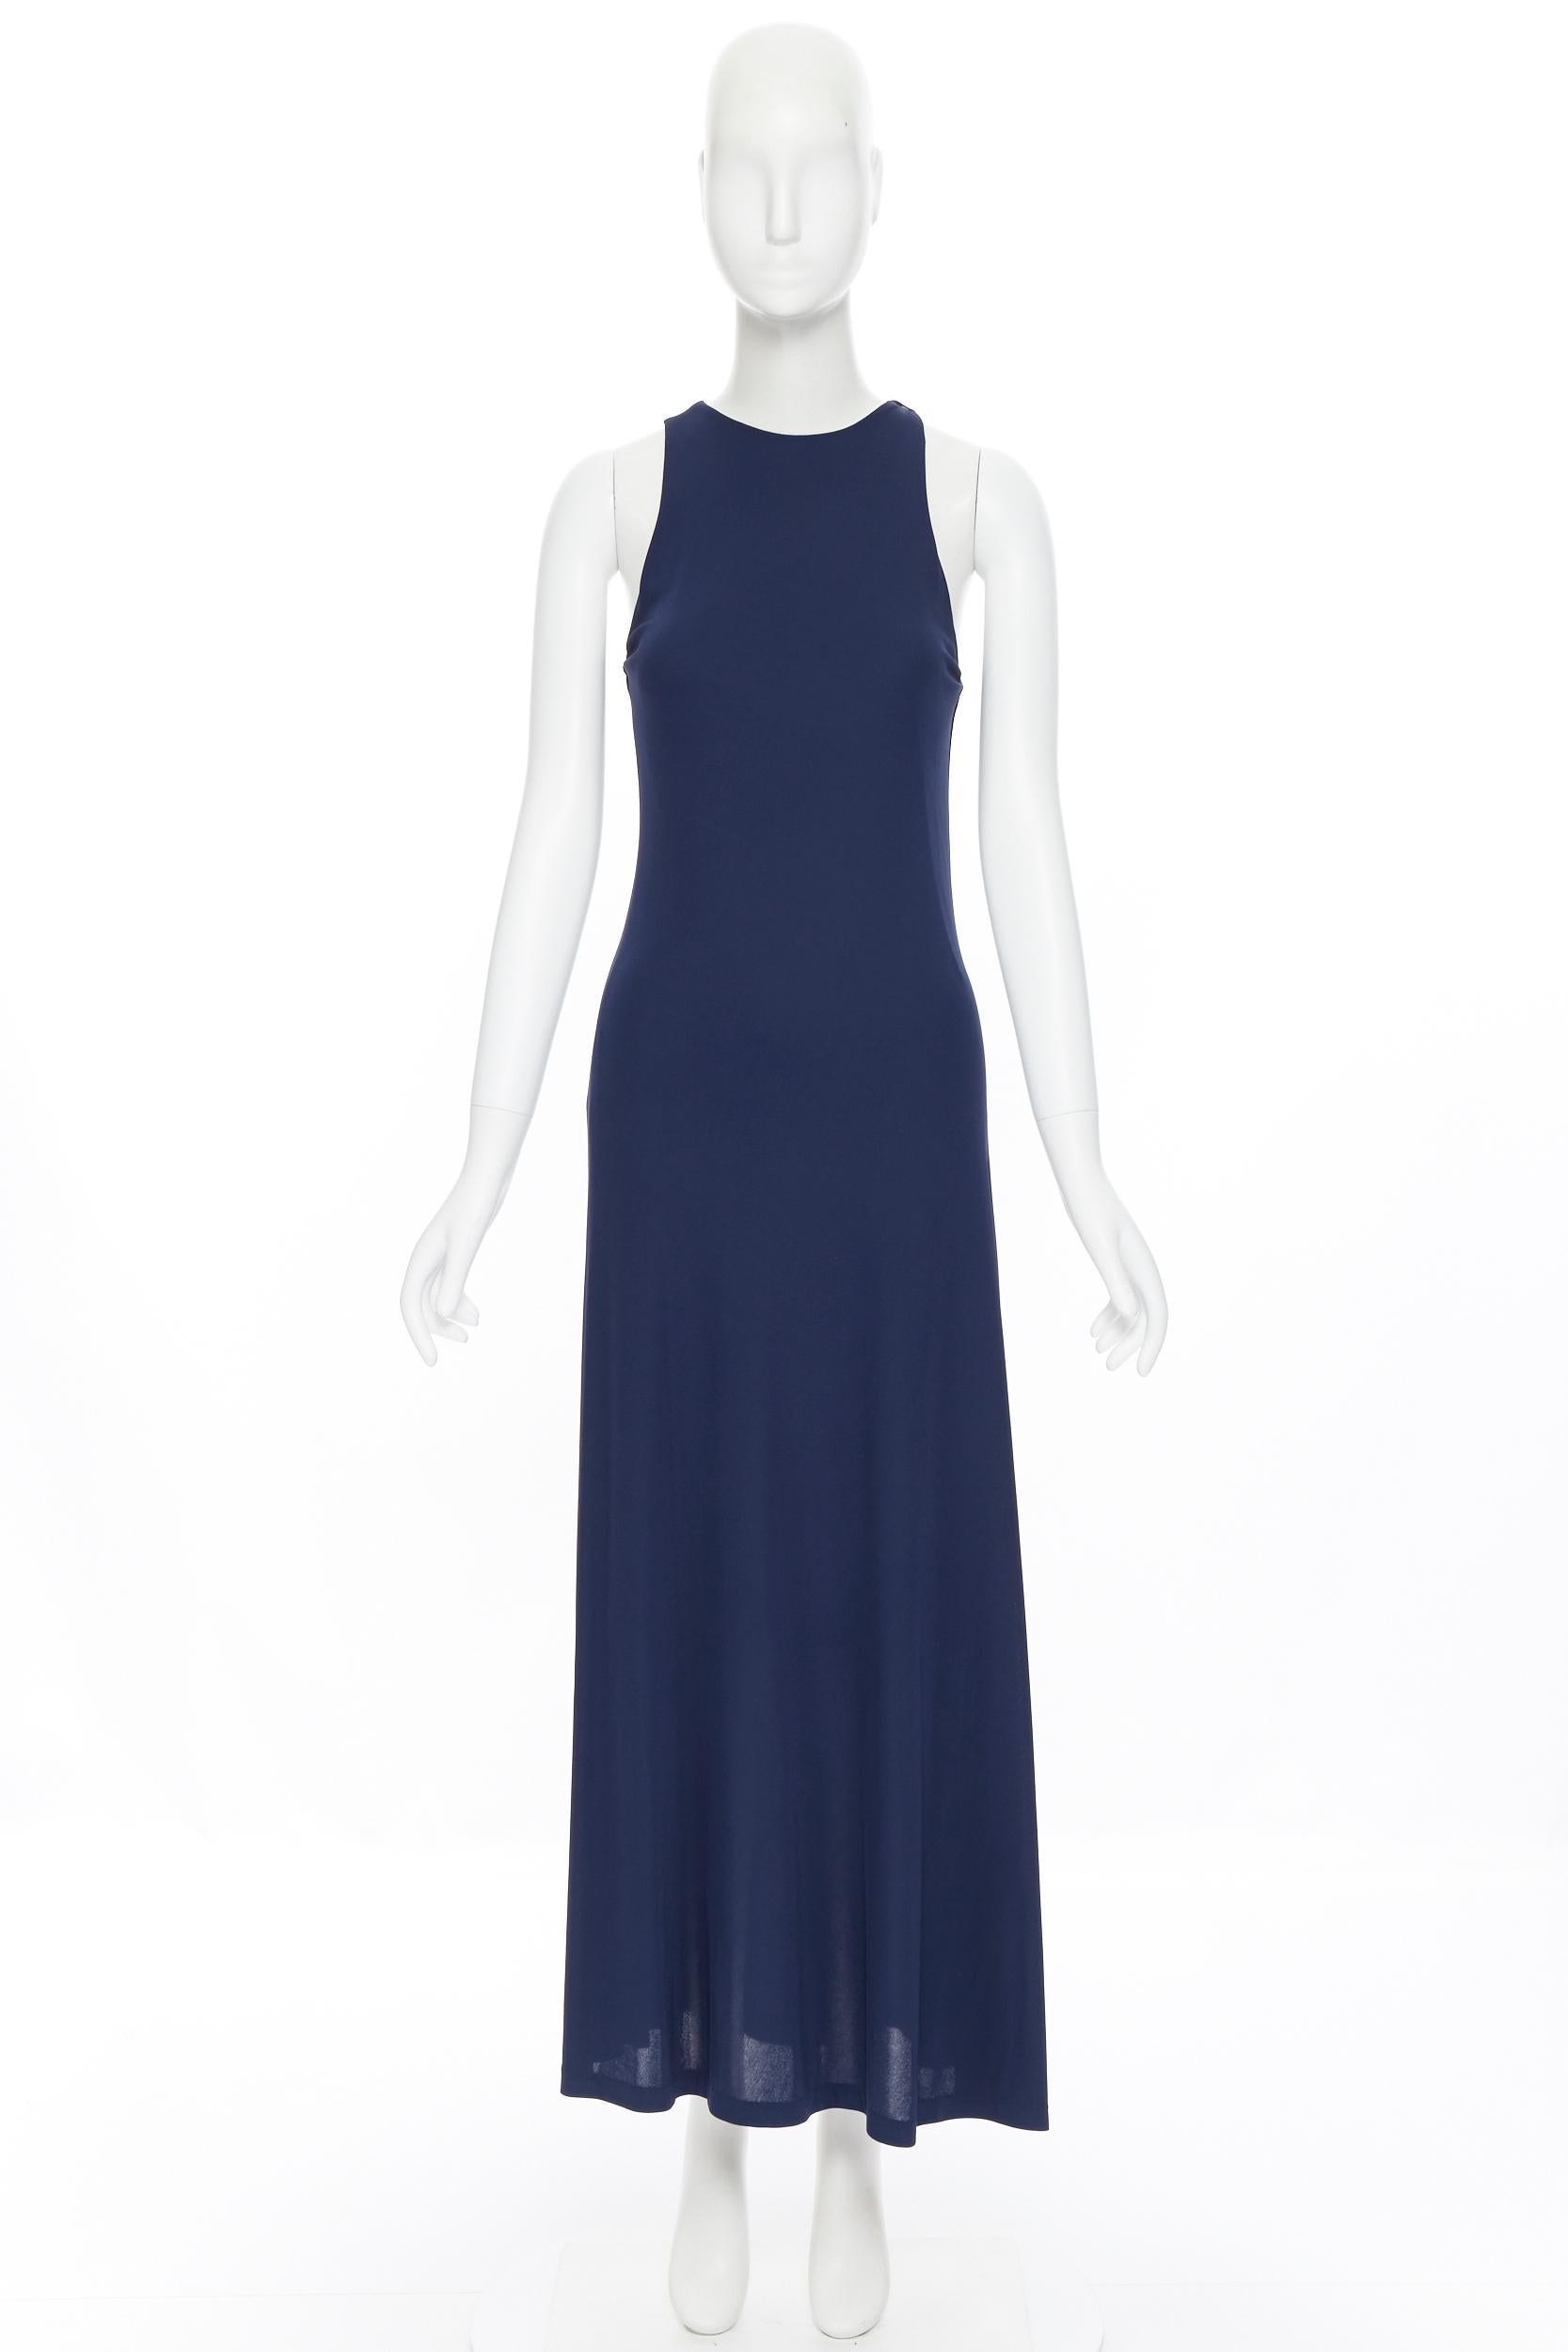 ralph lauren navy blue long dress